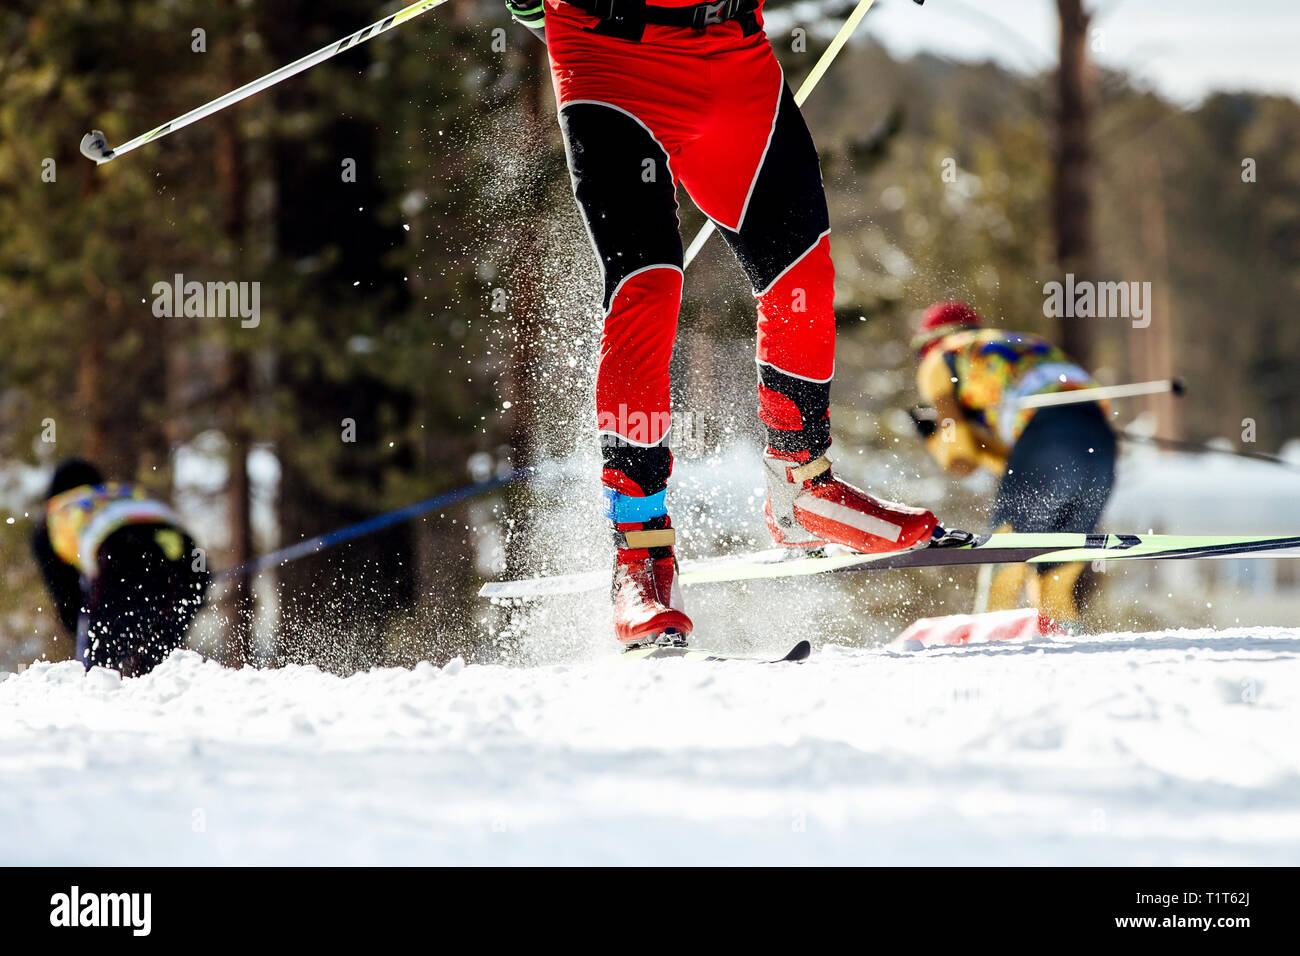 Pieds d'athlète skieur glisse sur neige à partir de la pulvérisation sous des bâtons de ski Banque D'Images